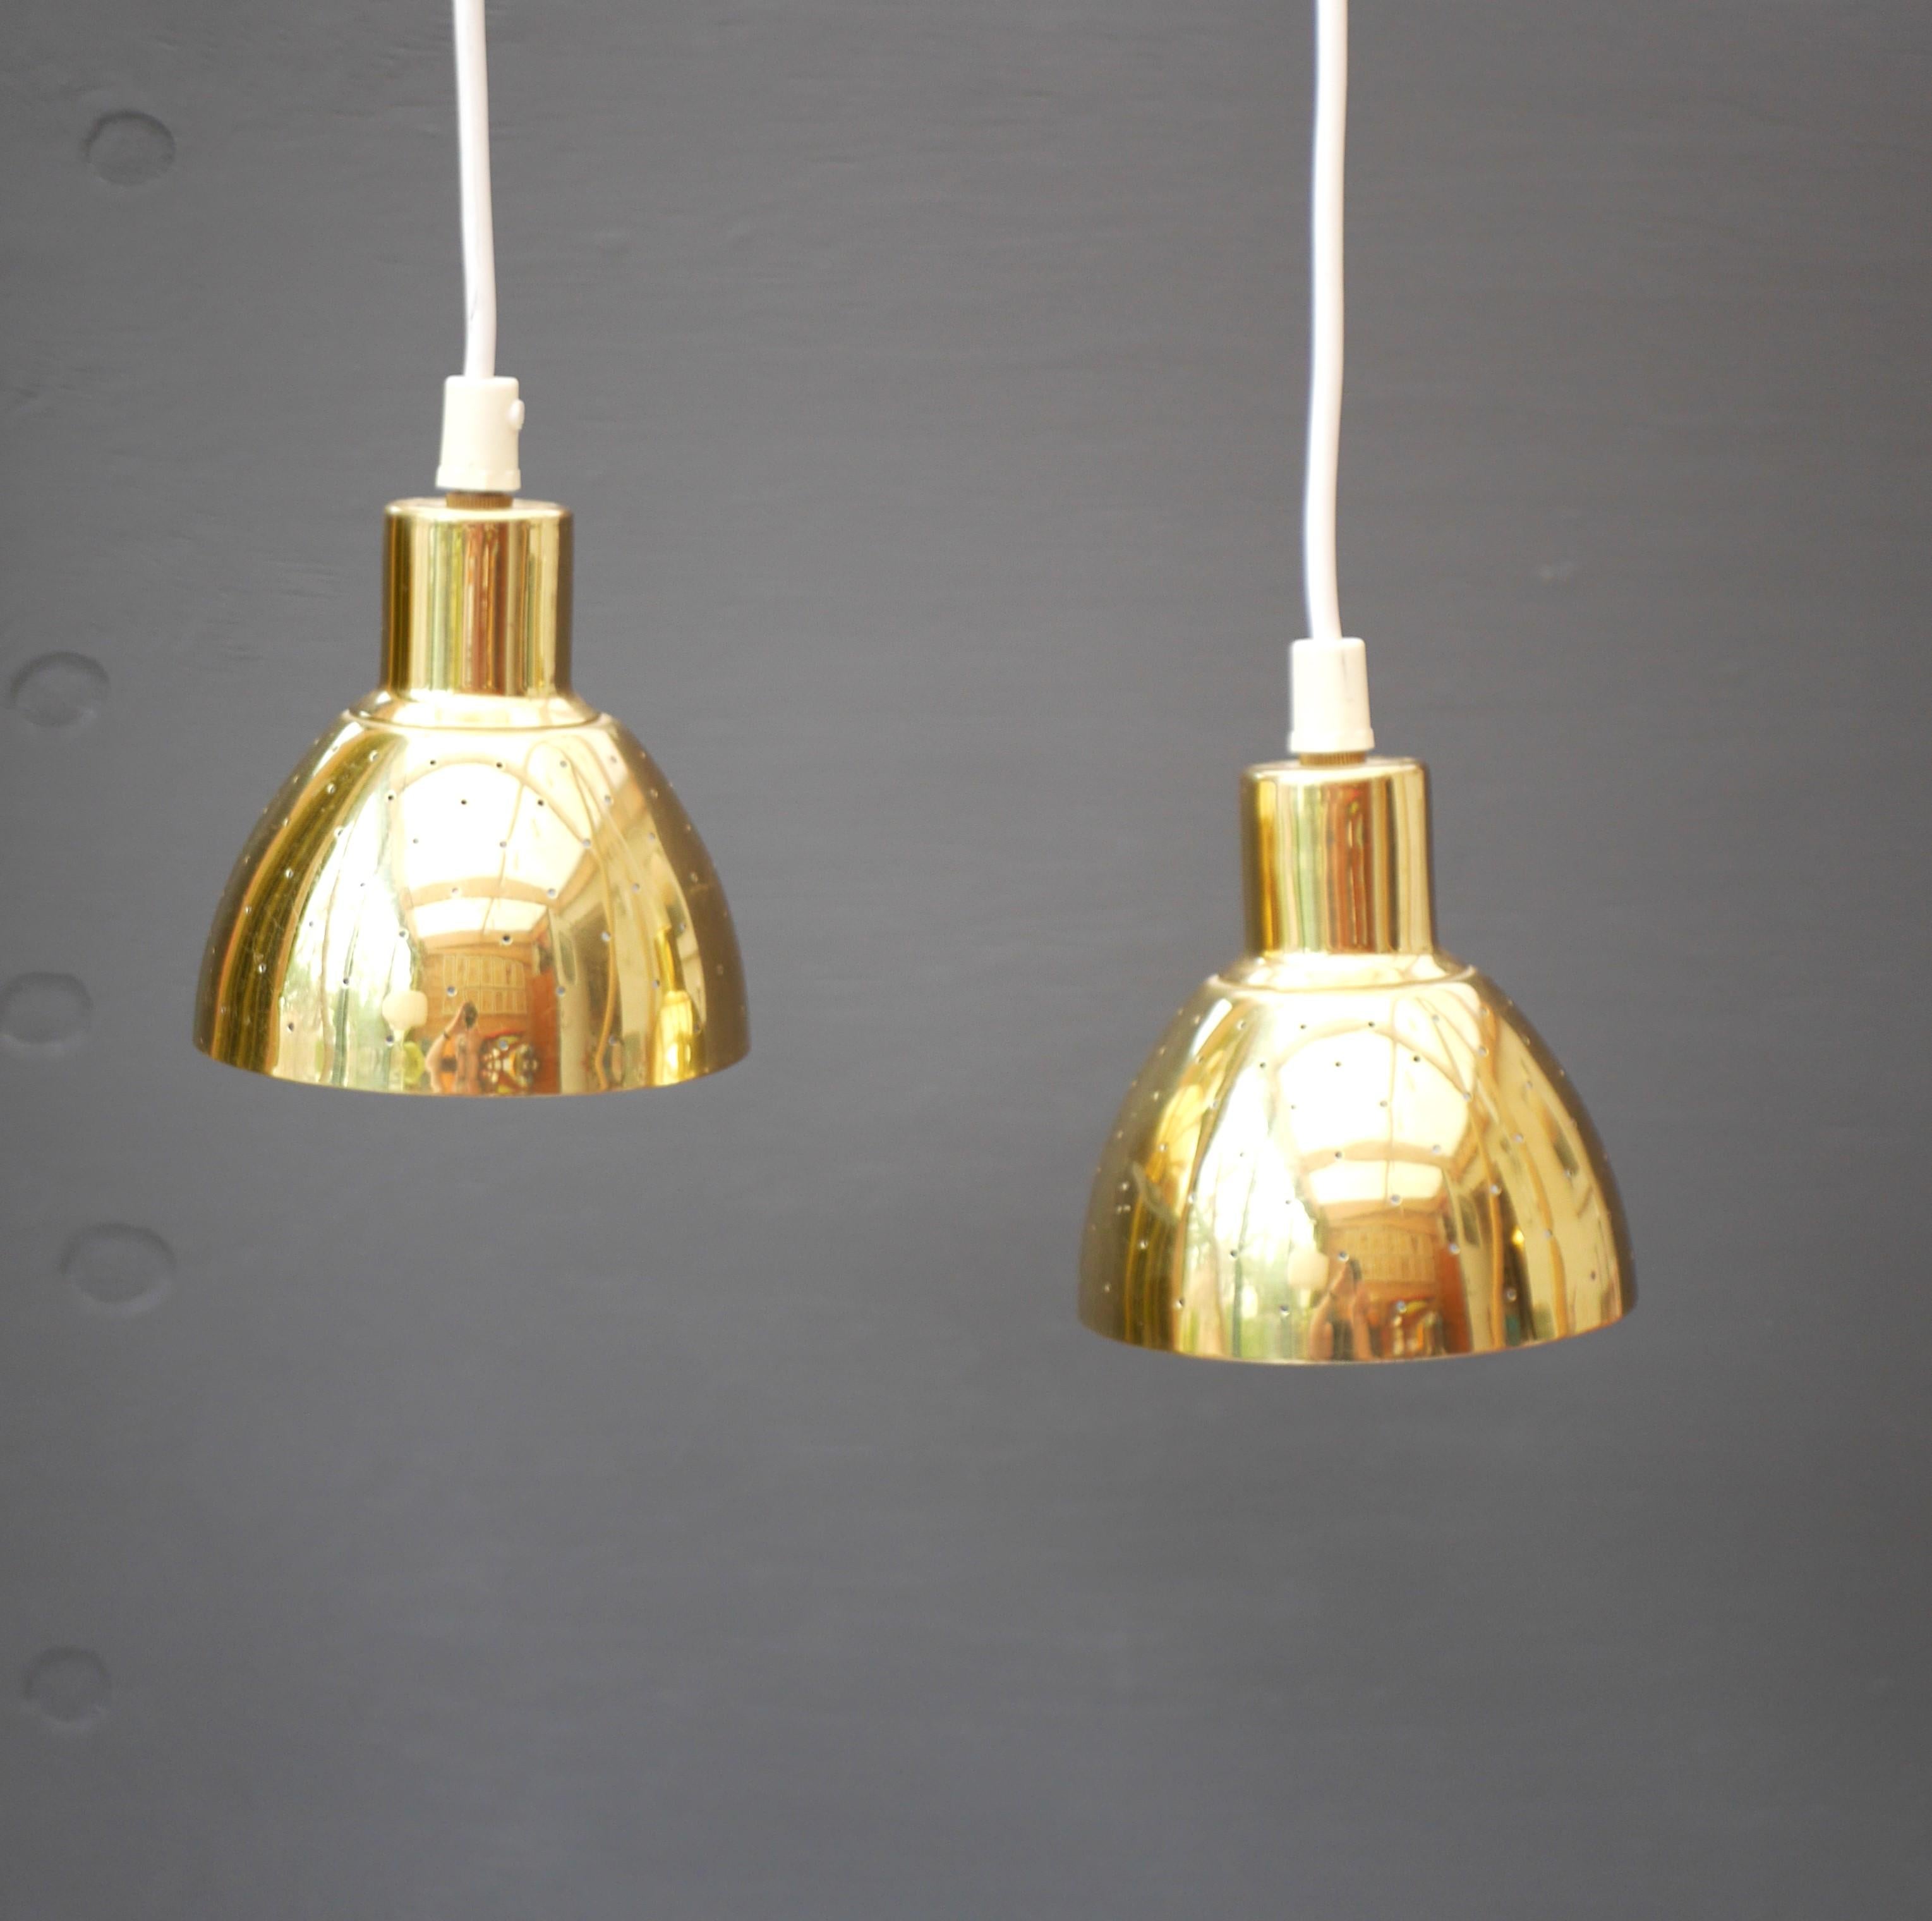 Ces petites lampes ont été conçues par le talentueux designer suédois Hans-Agne Agnes pour Markaryd dans les années 1960, tout en conservant un caractère contemporain. Le laiton perforé permettra à la lumière de filtrer à travers en faisant jouer la